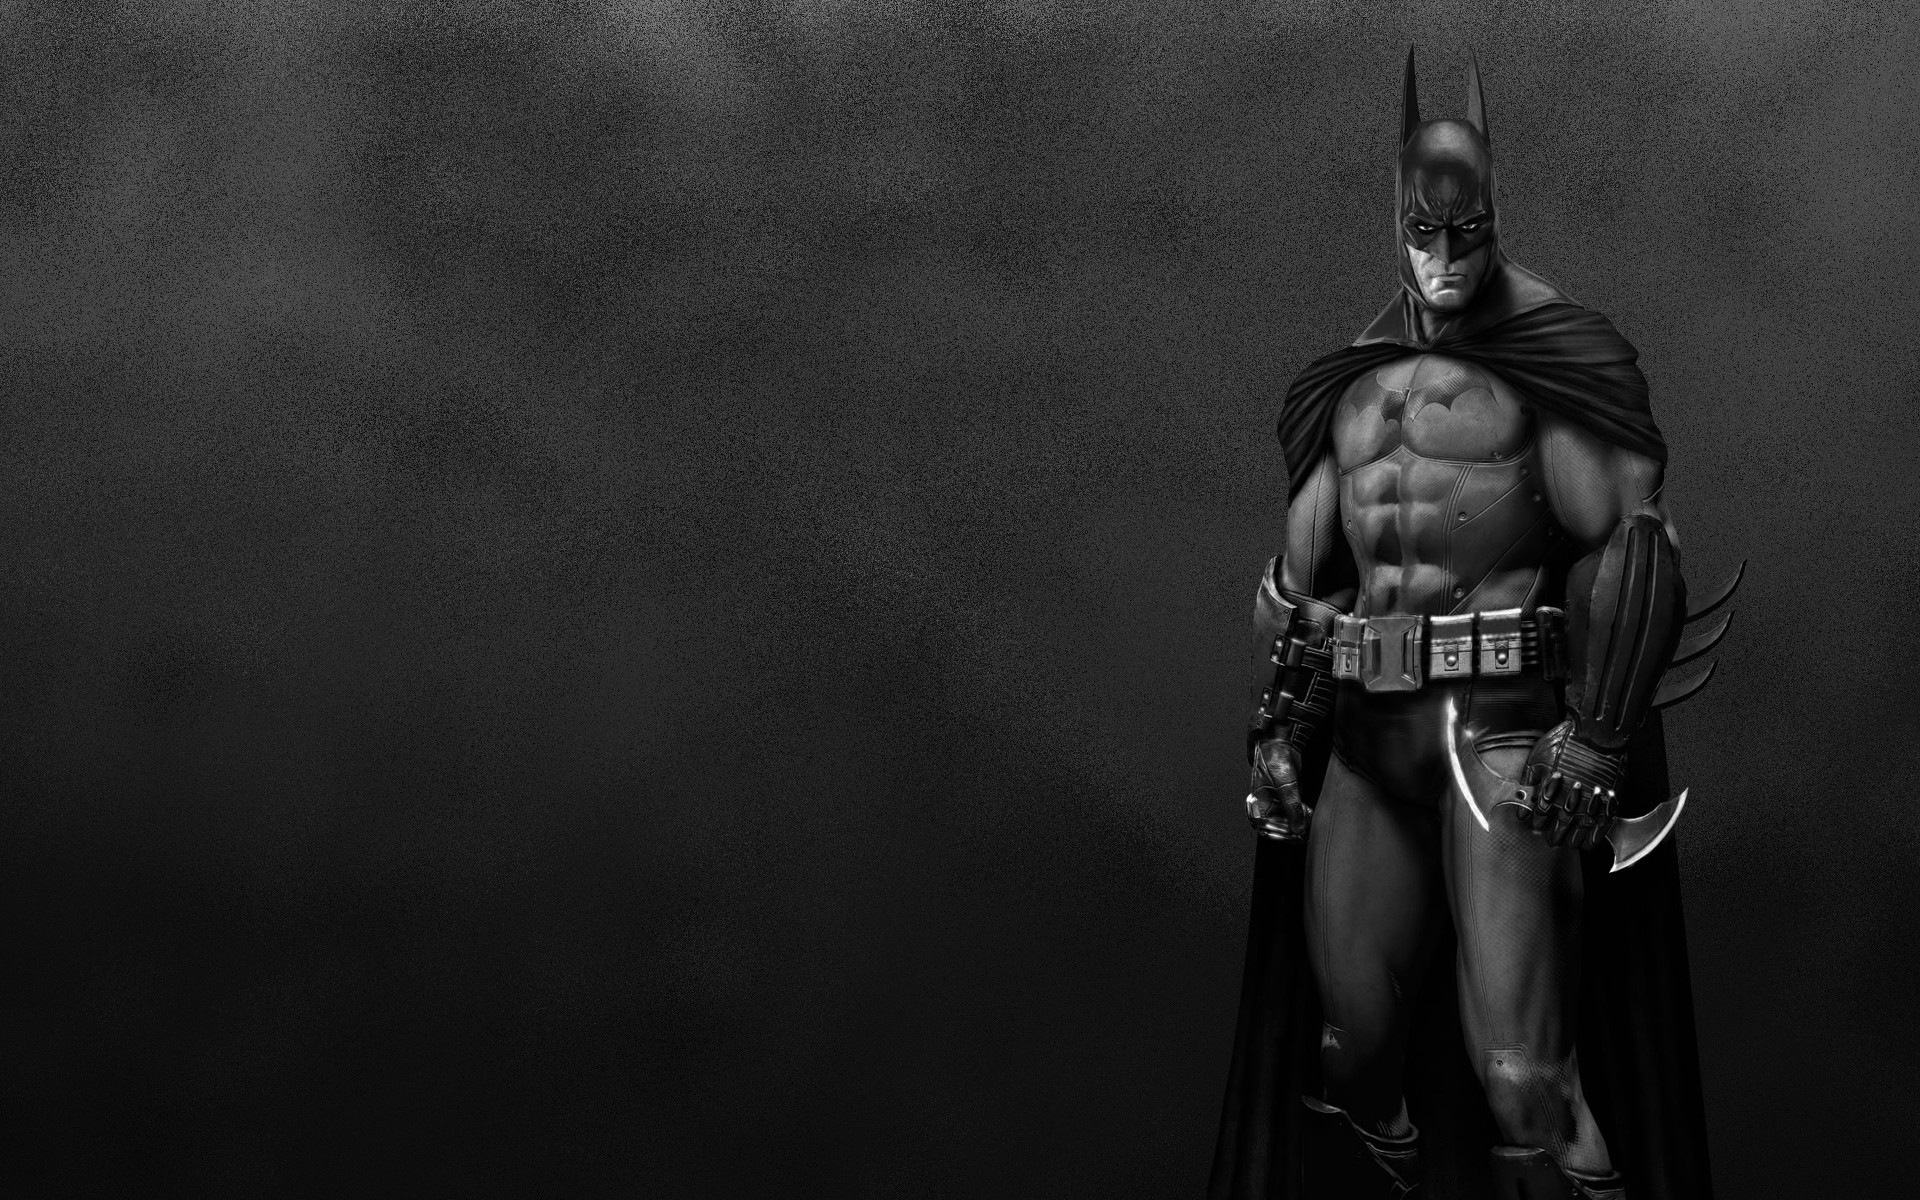 Batman Wallpaper Download Now - Batman Wallpaper Hd 1080p , HD Wallpaper & Backgrounds